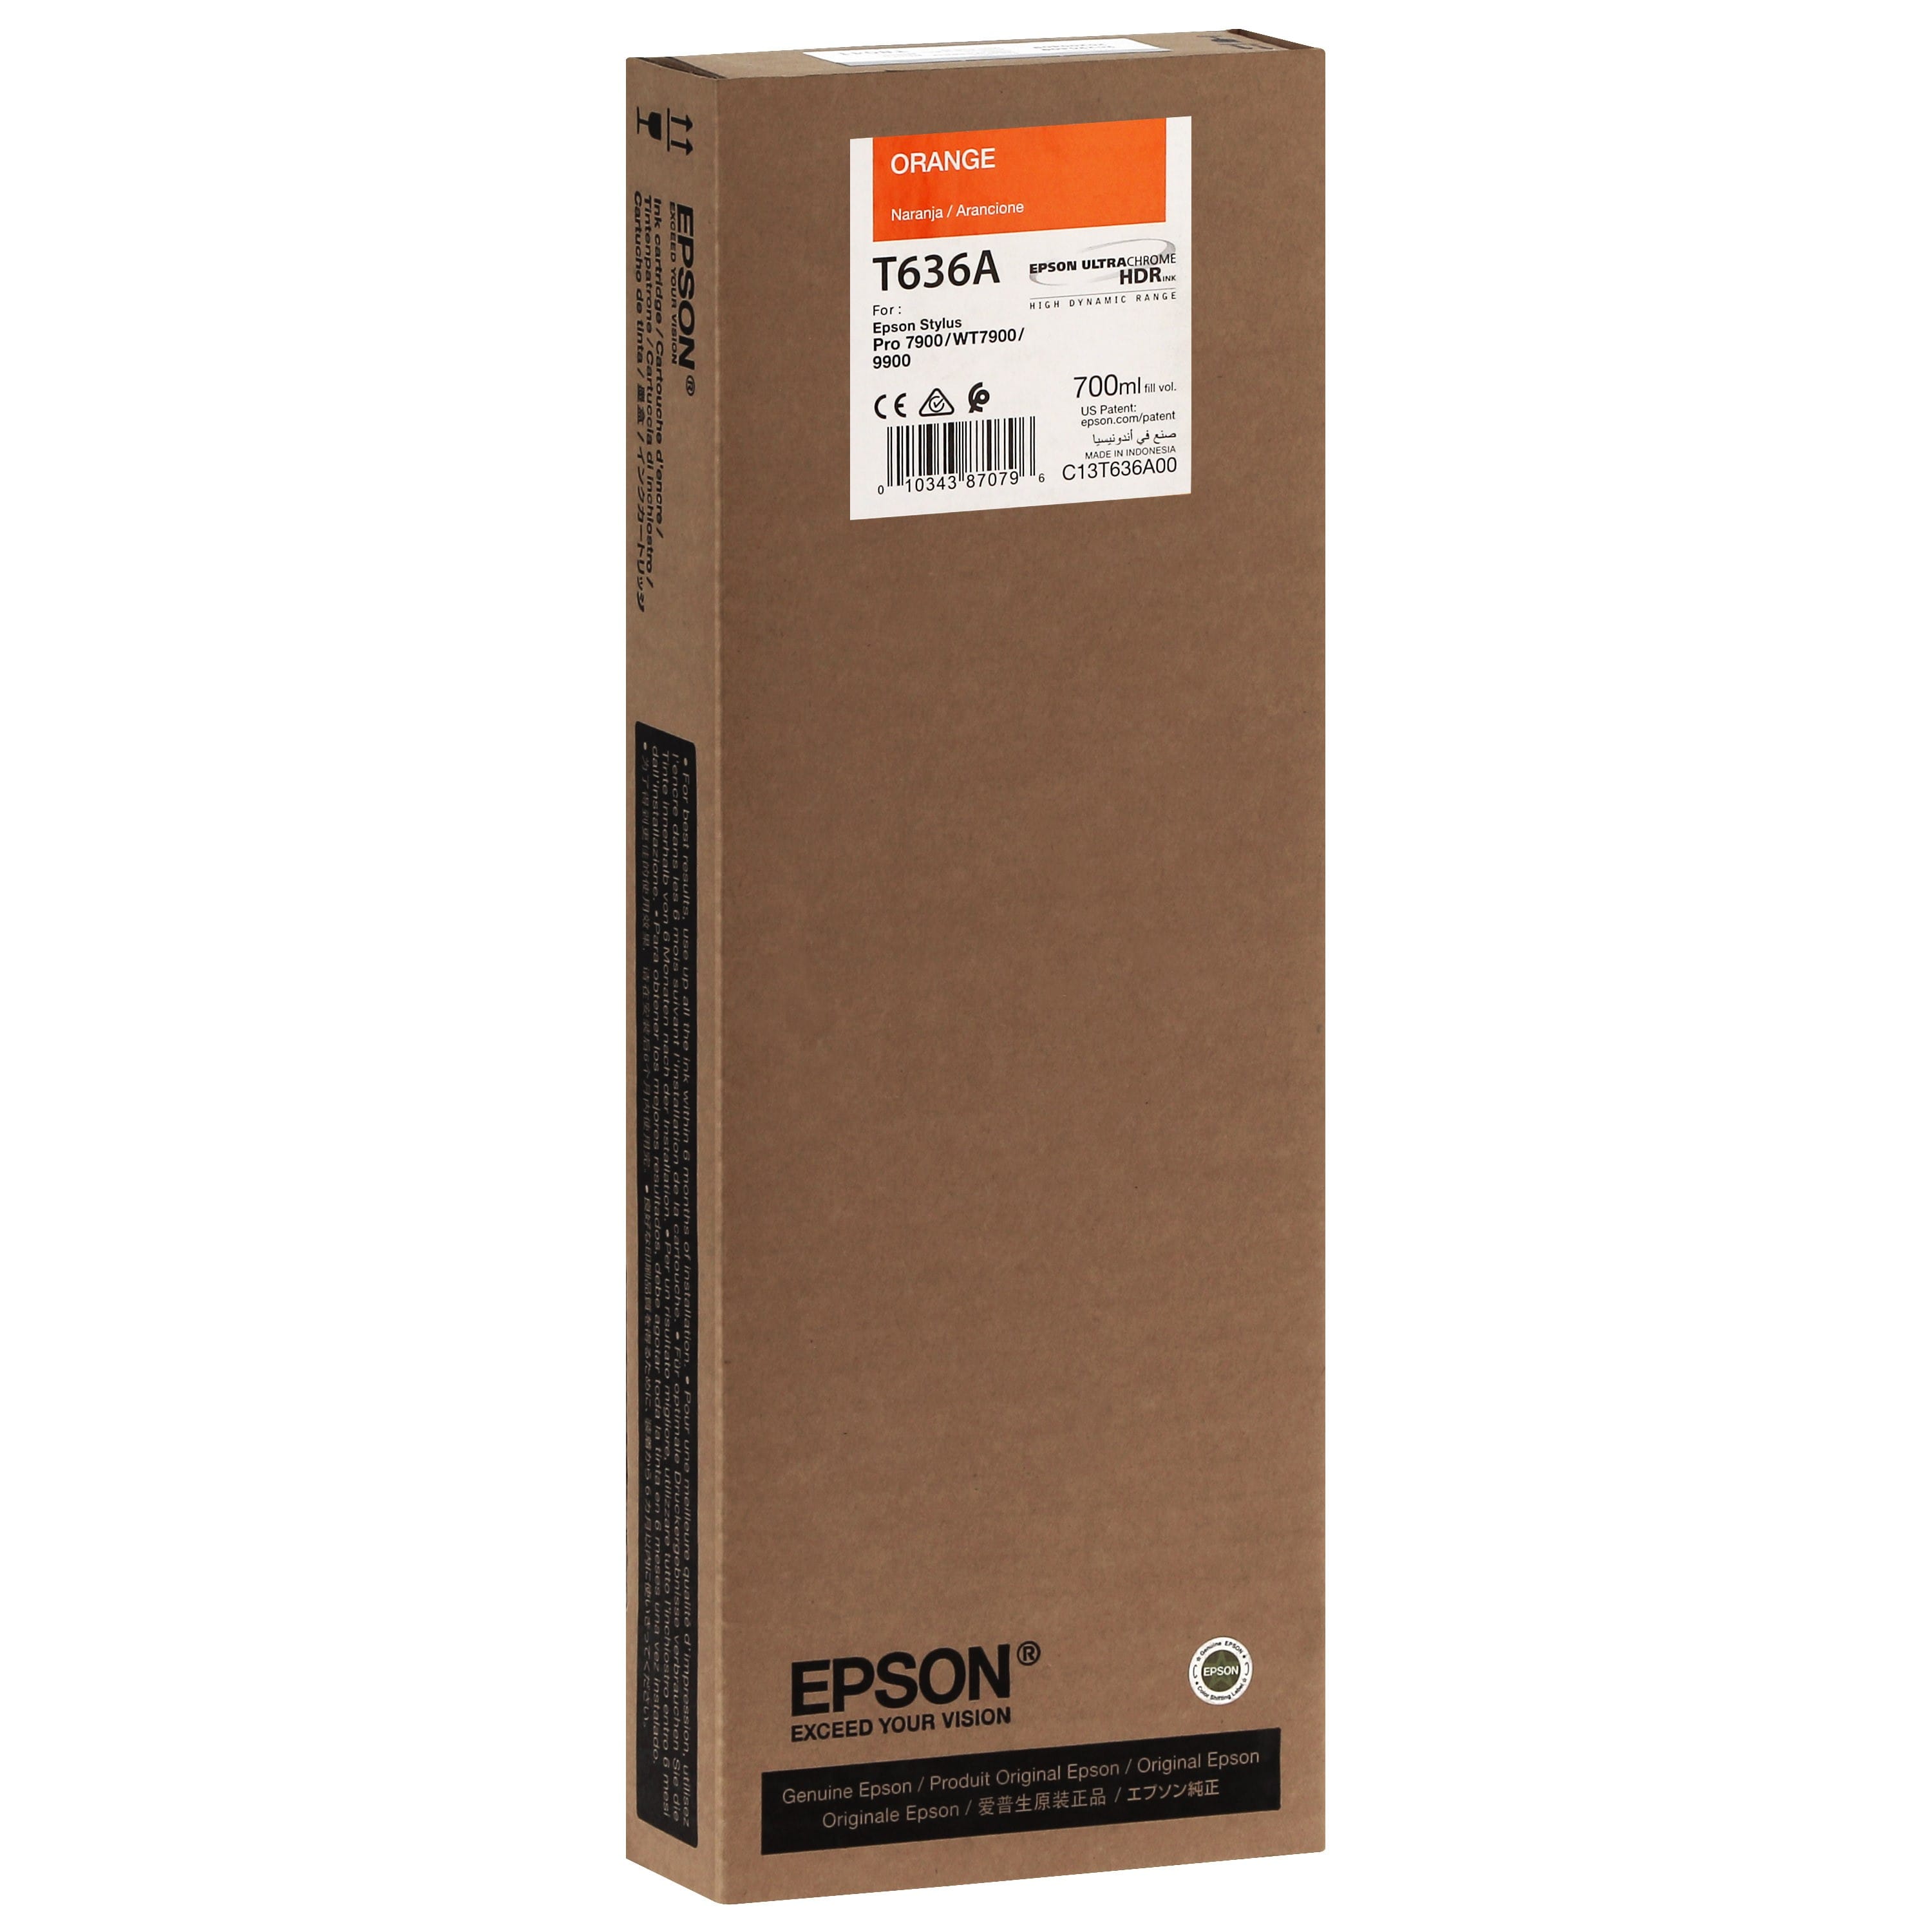 EPSON - Cartouche d'encre traceur T636A Pour imprimante 7900/9900 Orange - 700ml